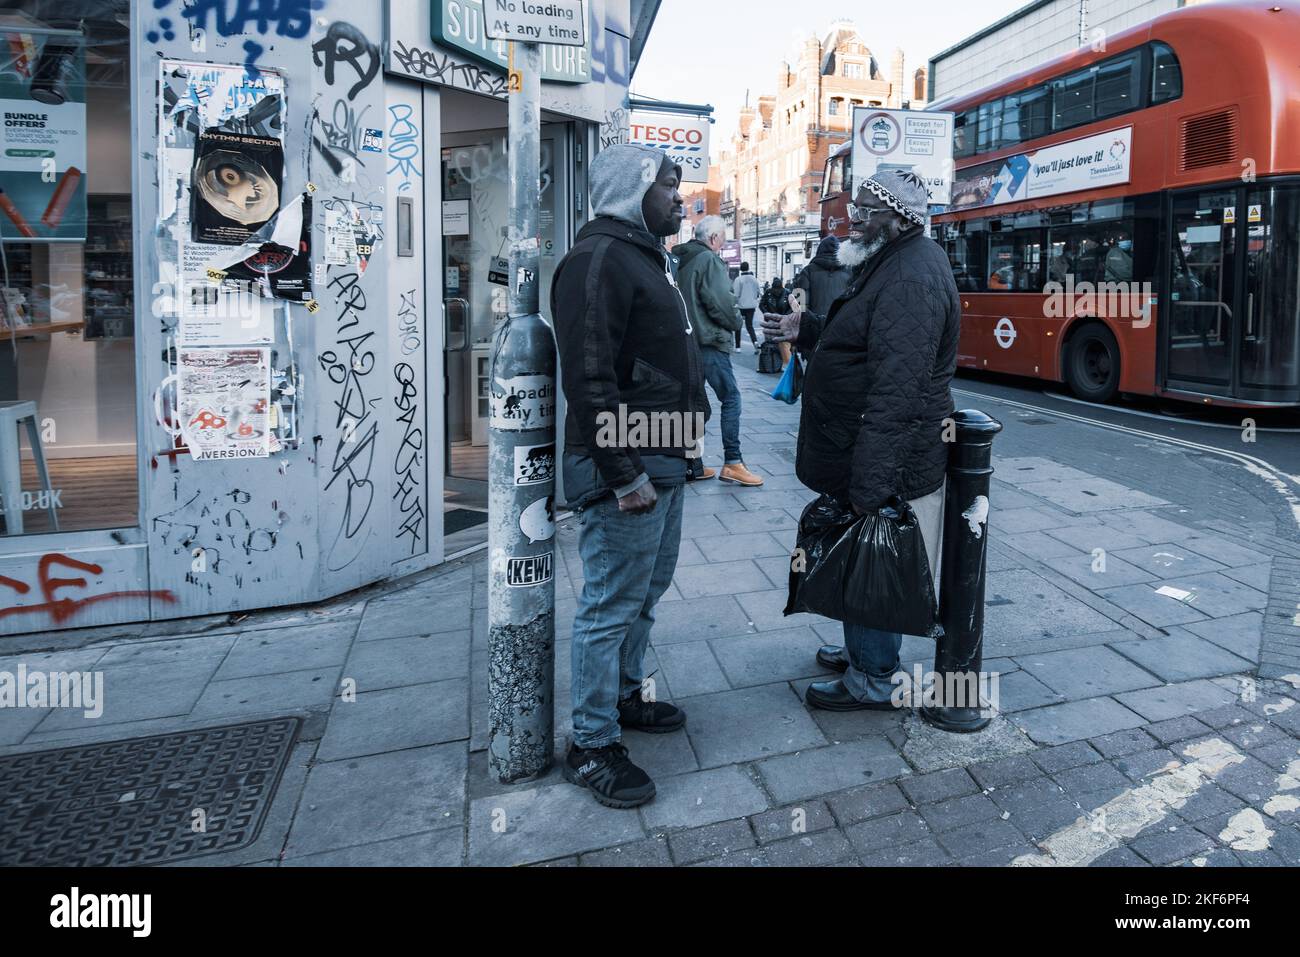 Conversazione tra la gente del posto a Peckham, un quartiere nel sud-est di Londra, Inghilterra, Regno Unito Foto Stock